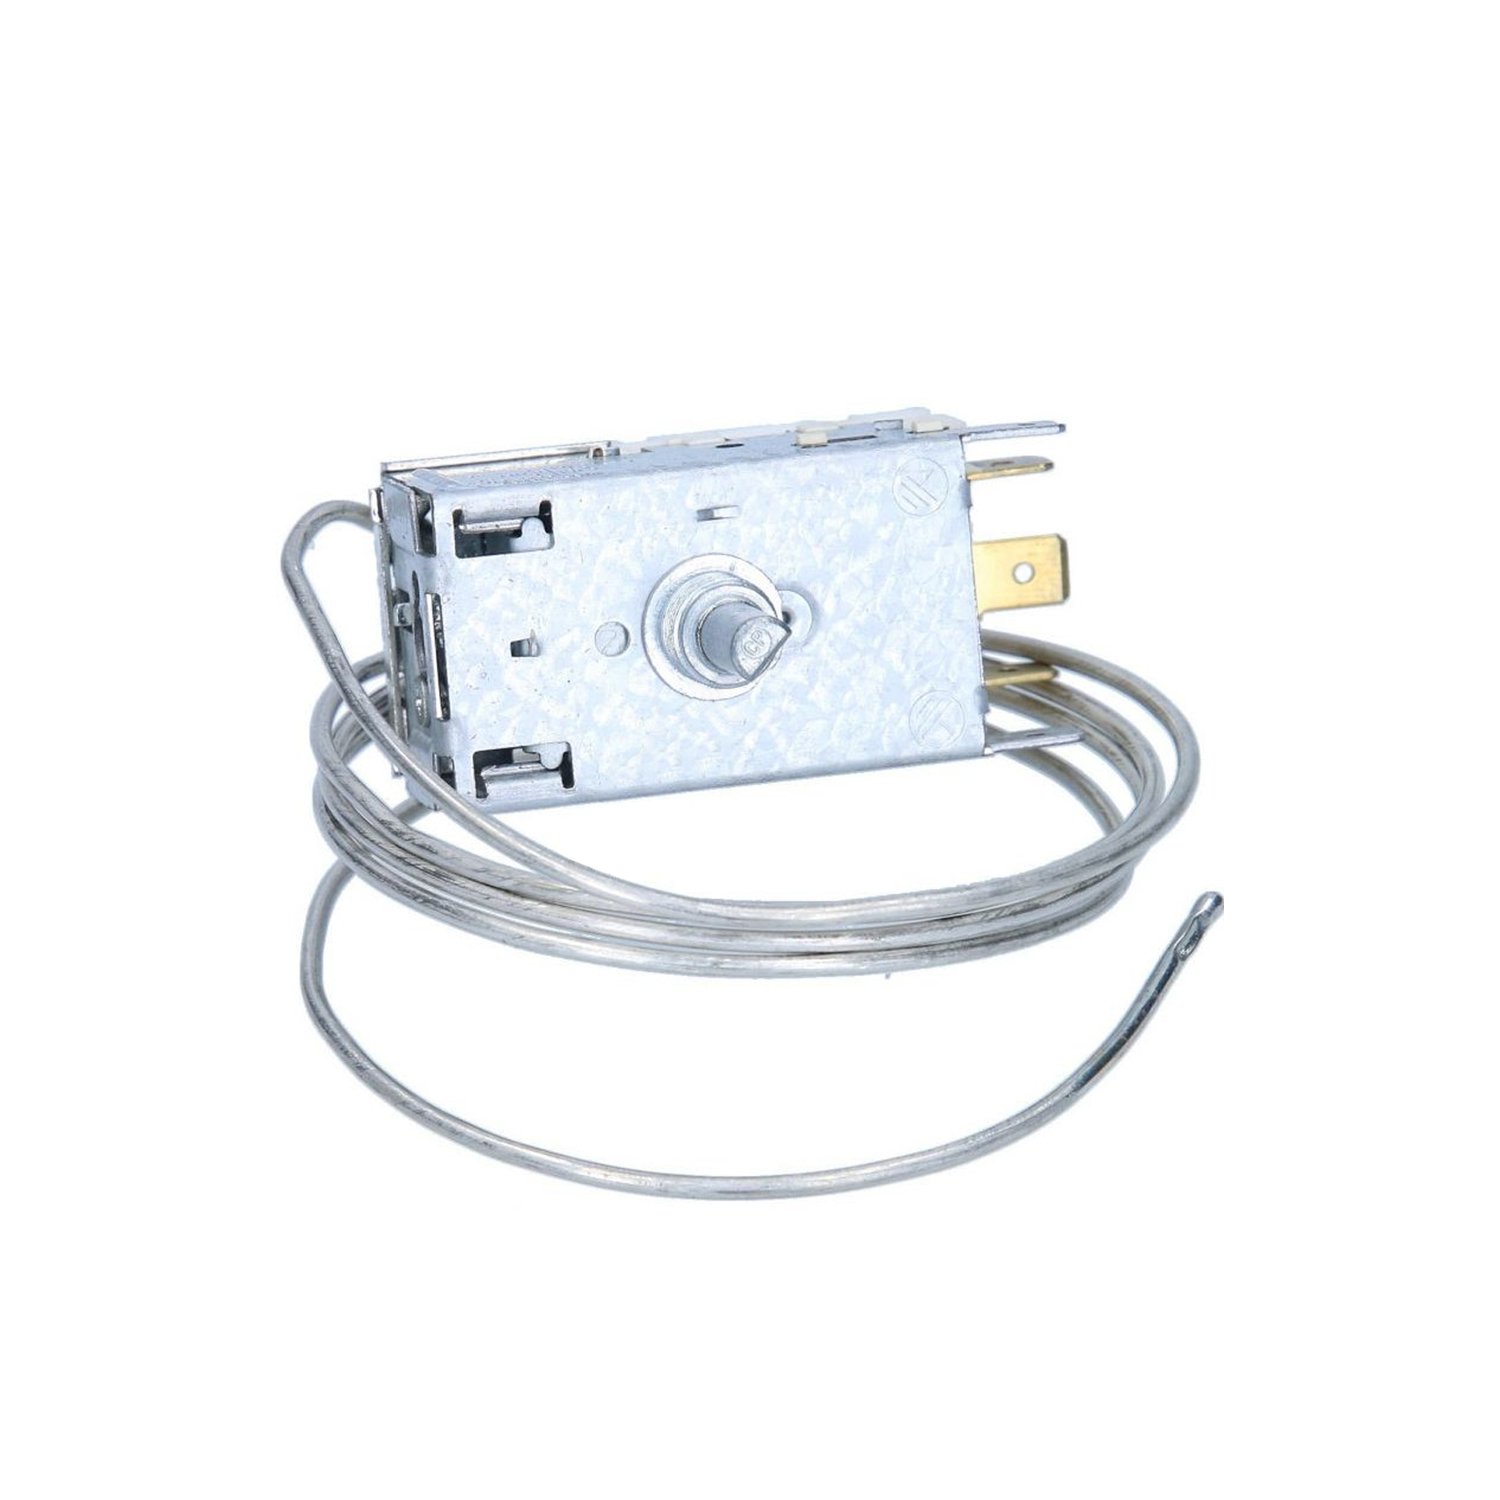 Thermostat Ranco K59-S1845 for refrigerator ARCELIK 9002756585